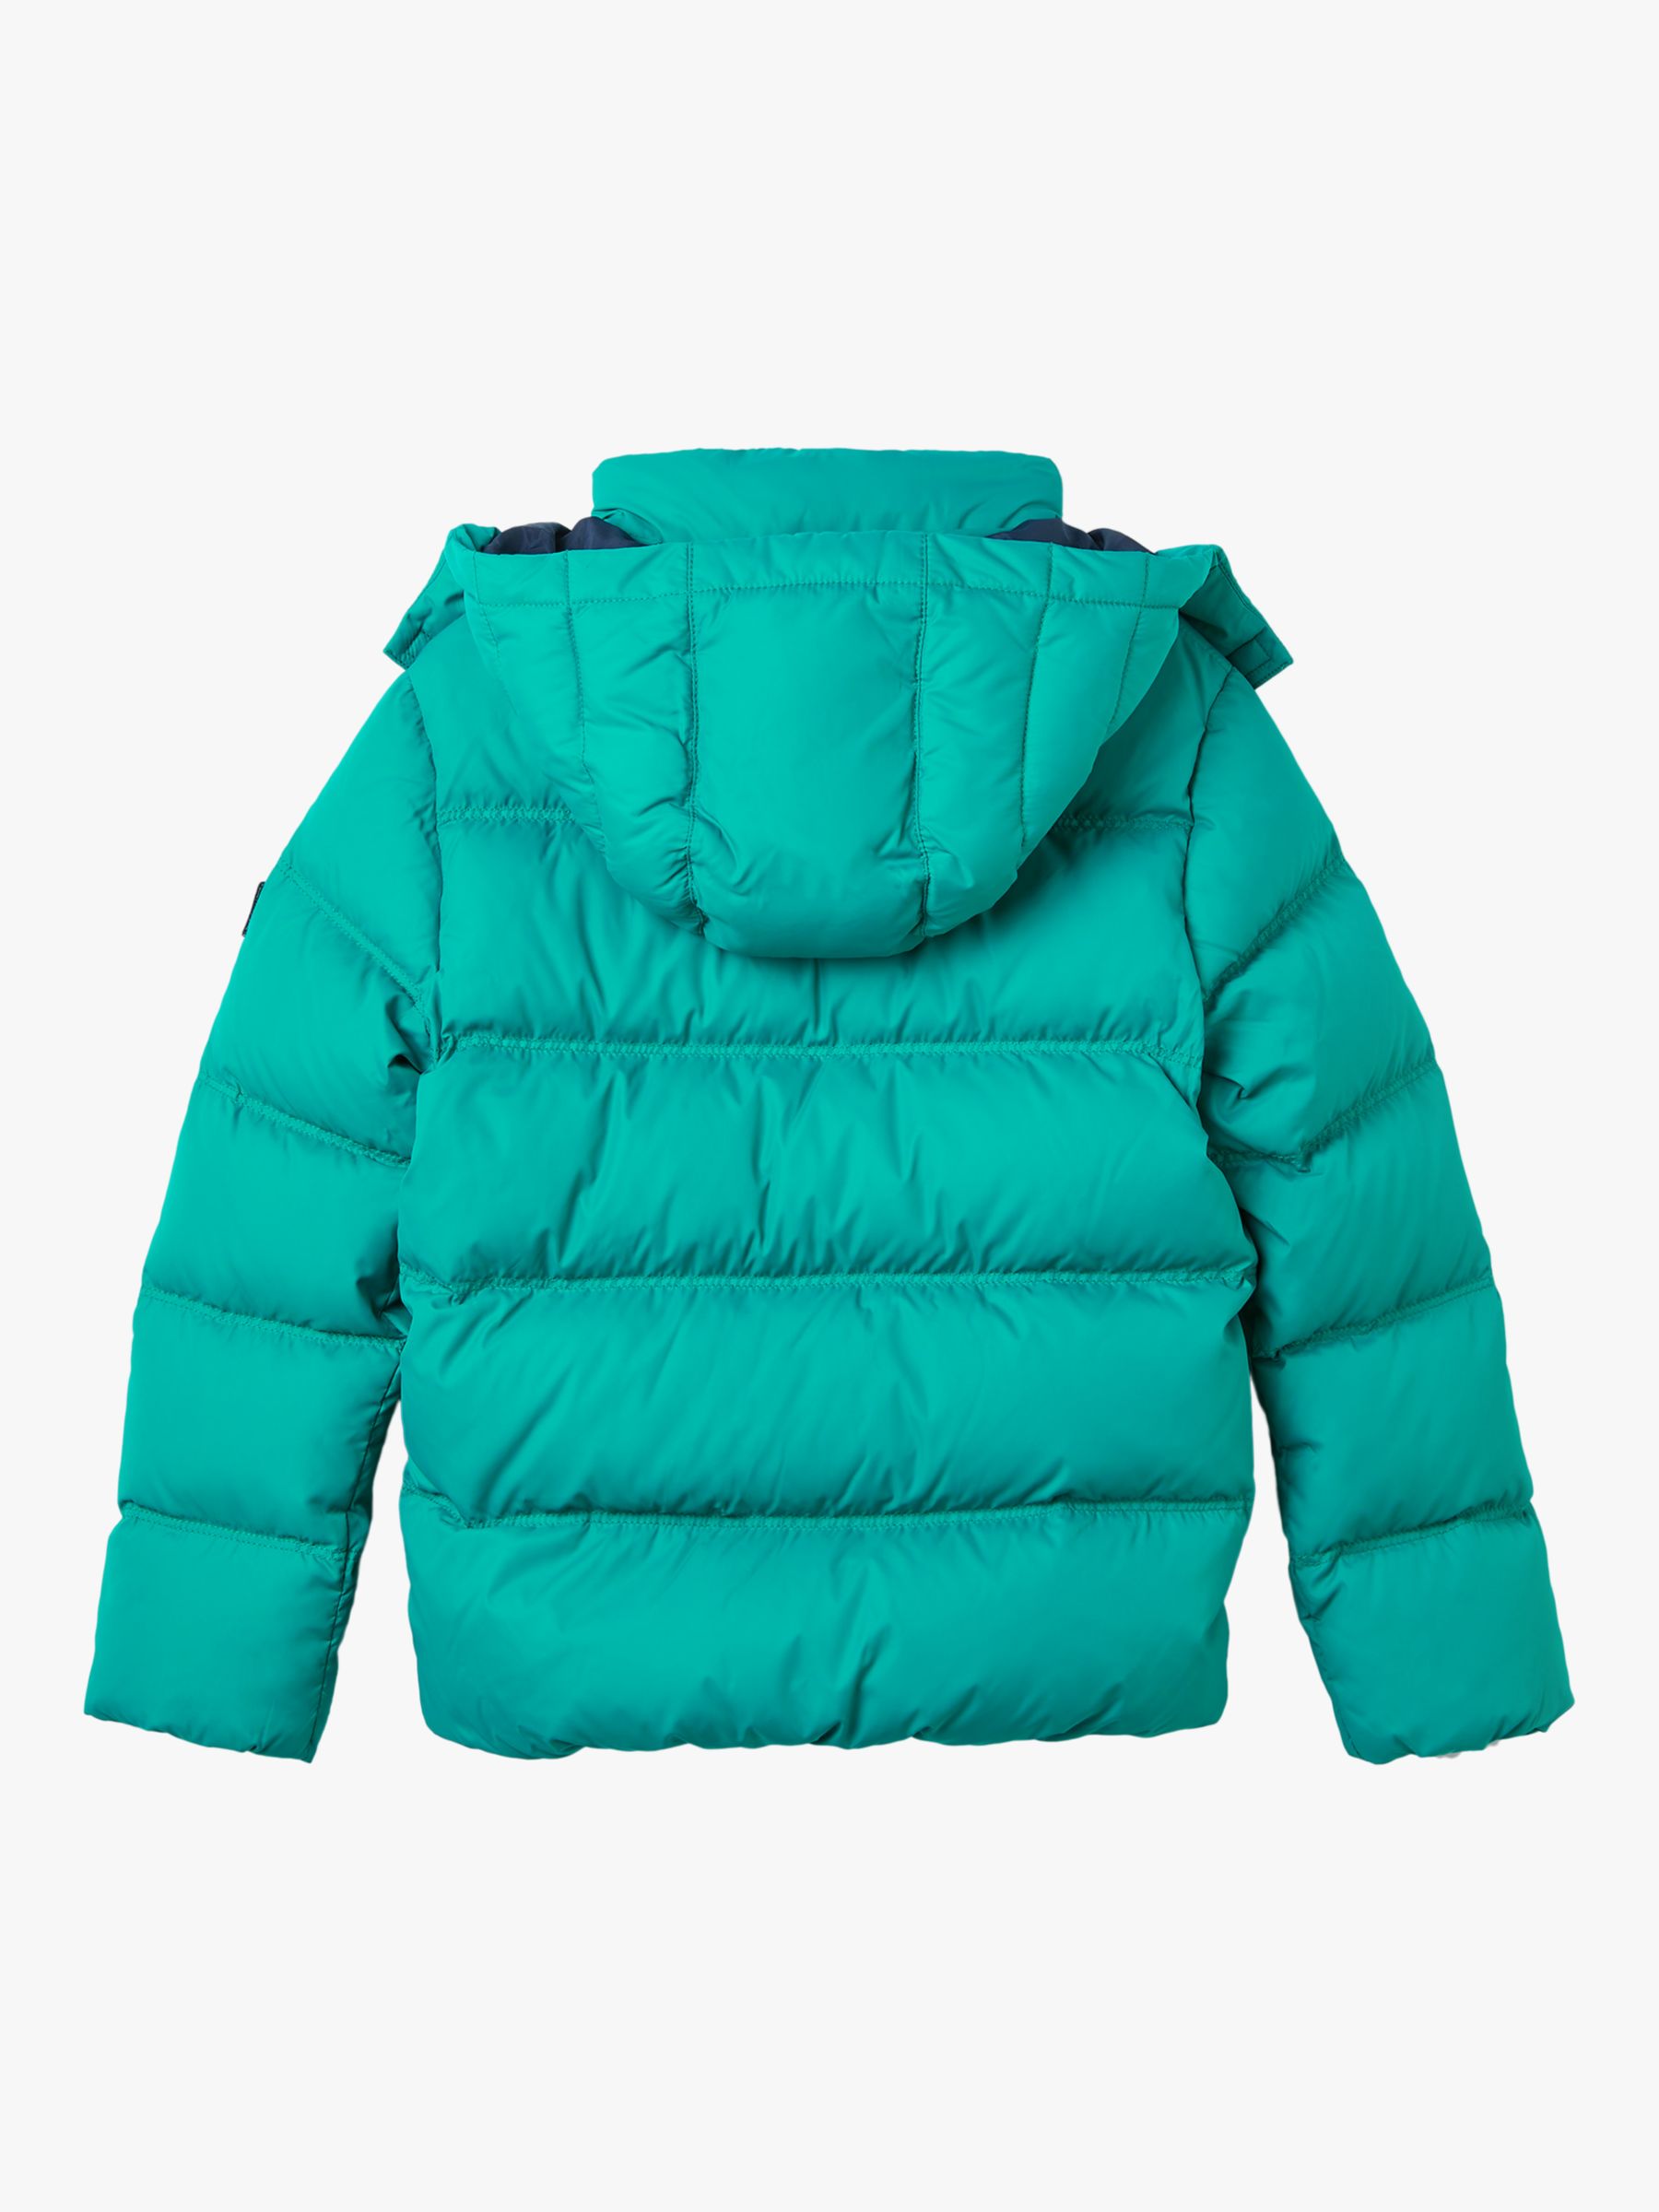 Tommy Hilfiger Kids' Essential Jacket, Teal at John Lewis & Partners